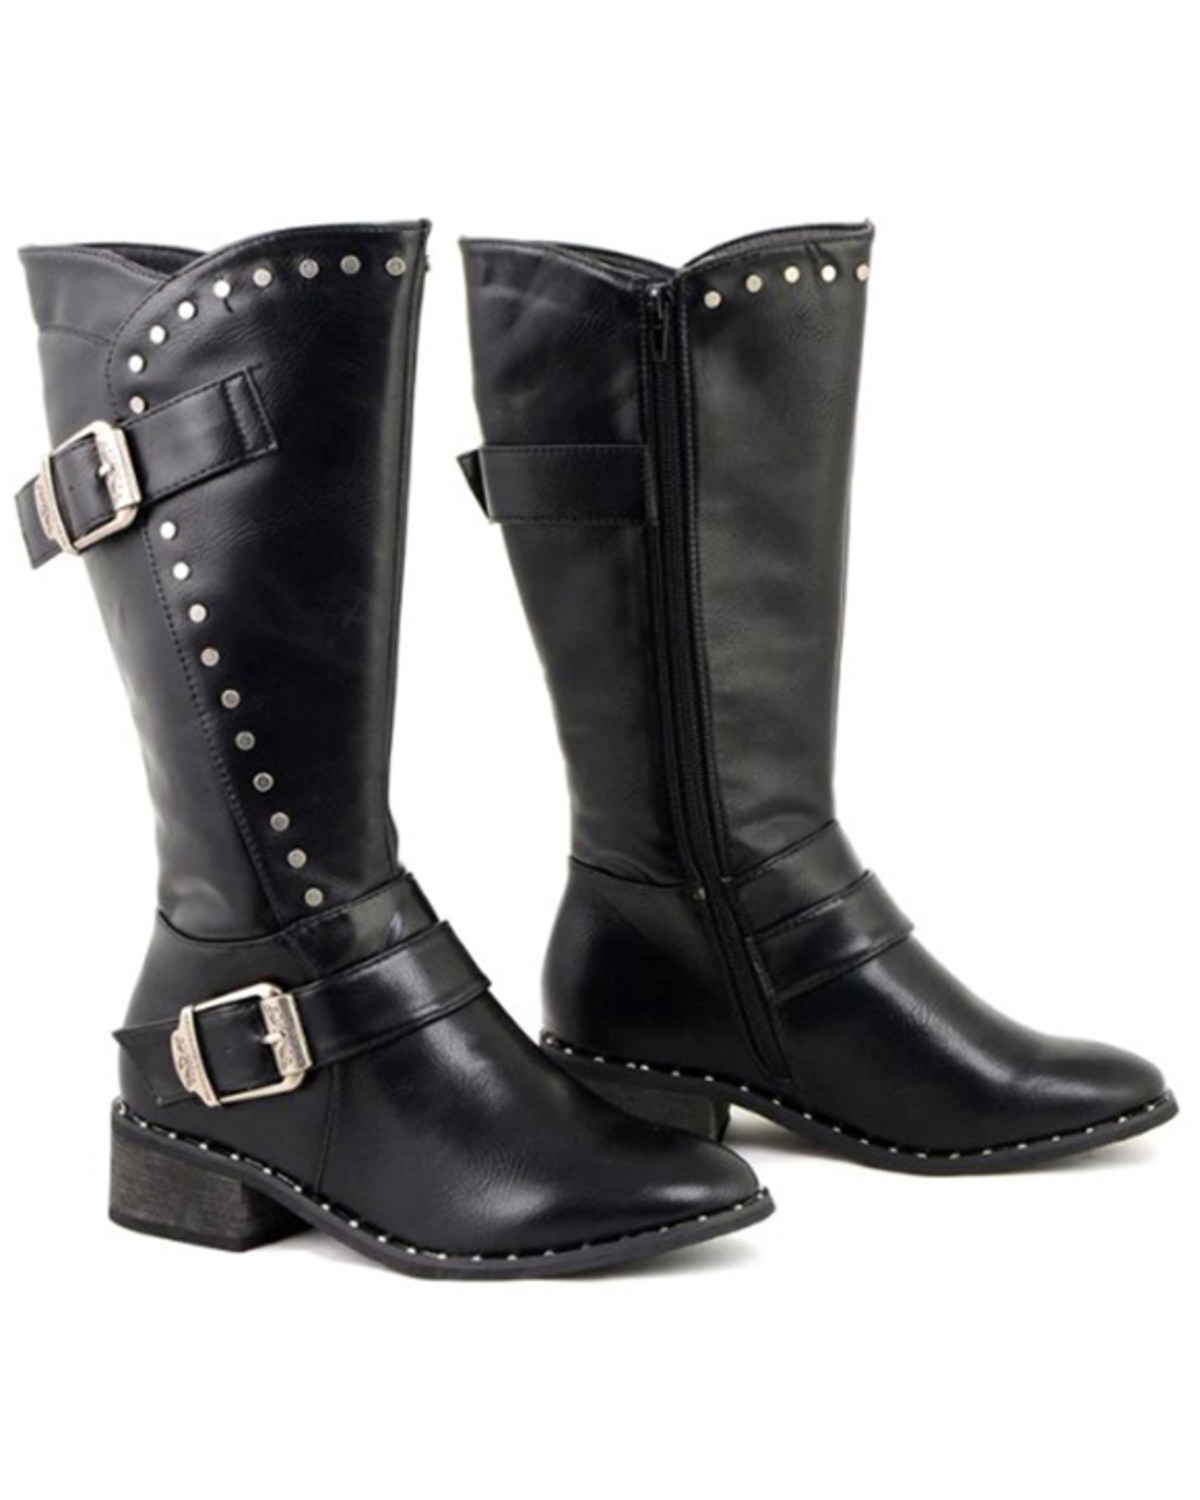 Milwaukee Leather Women's Studded Boots - Medium Toe